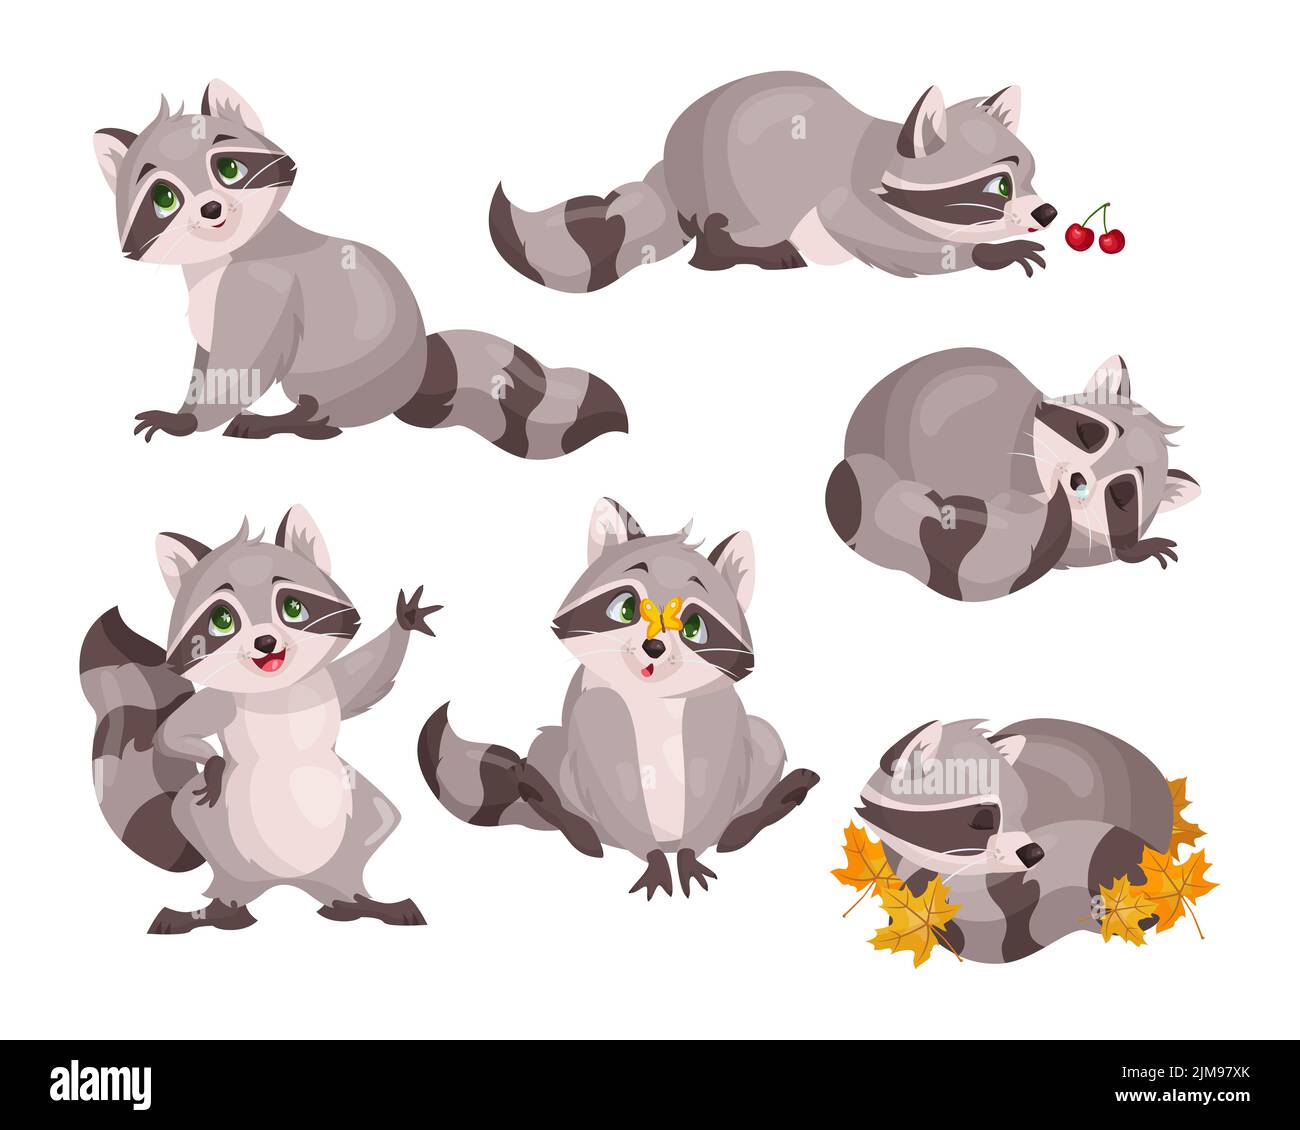 Set di simpatici personaggi da raccoon. Illustrazioni vettoriali di piccoli animali selvatici della foresta. Fumetto pose divertenti di dormire, giocare, onditare adorabile raccoon isol Illustrazione Vettoriale